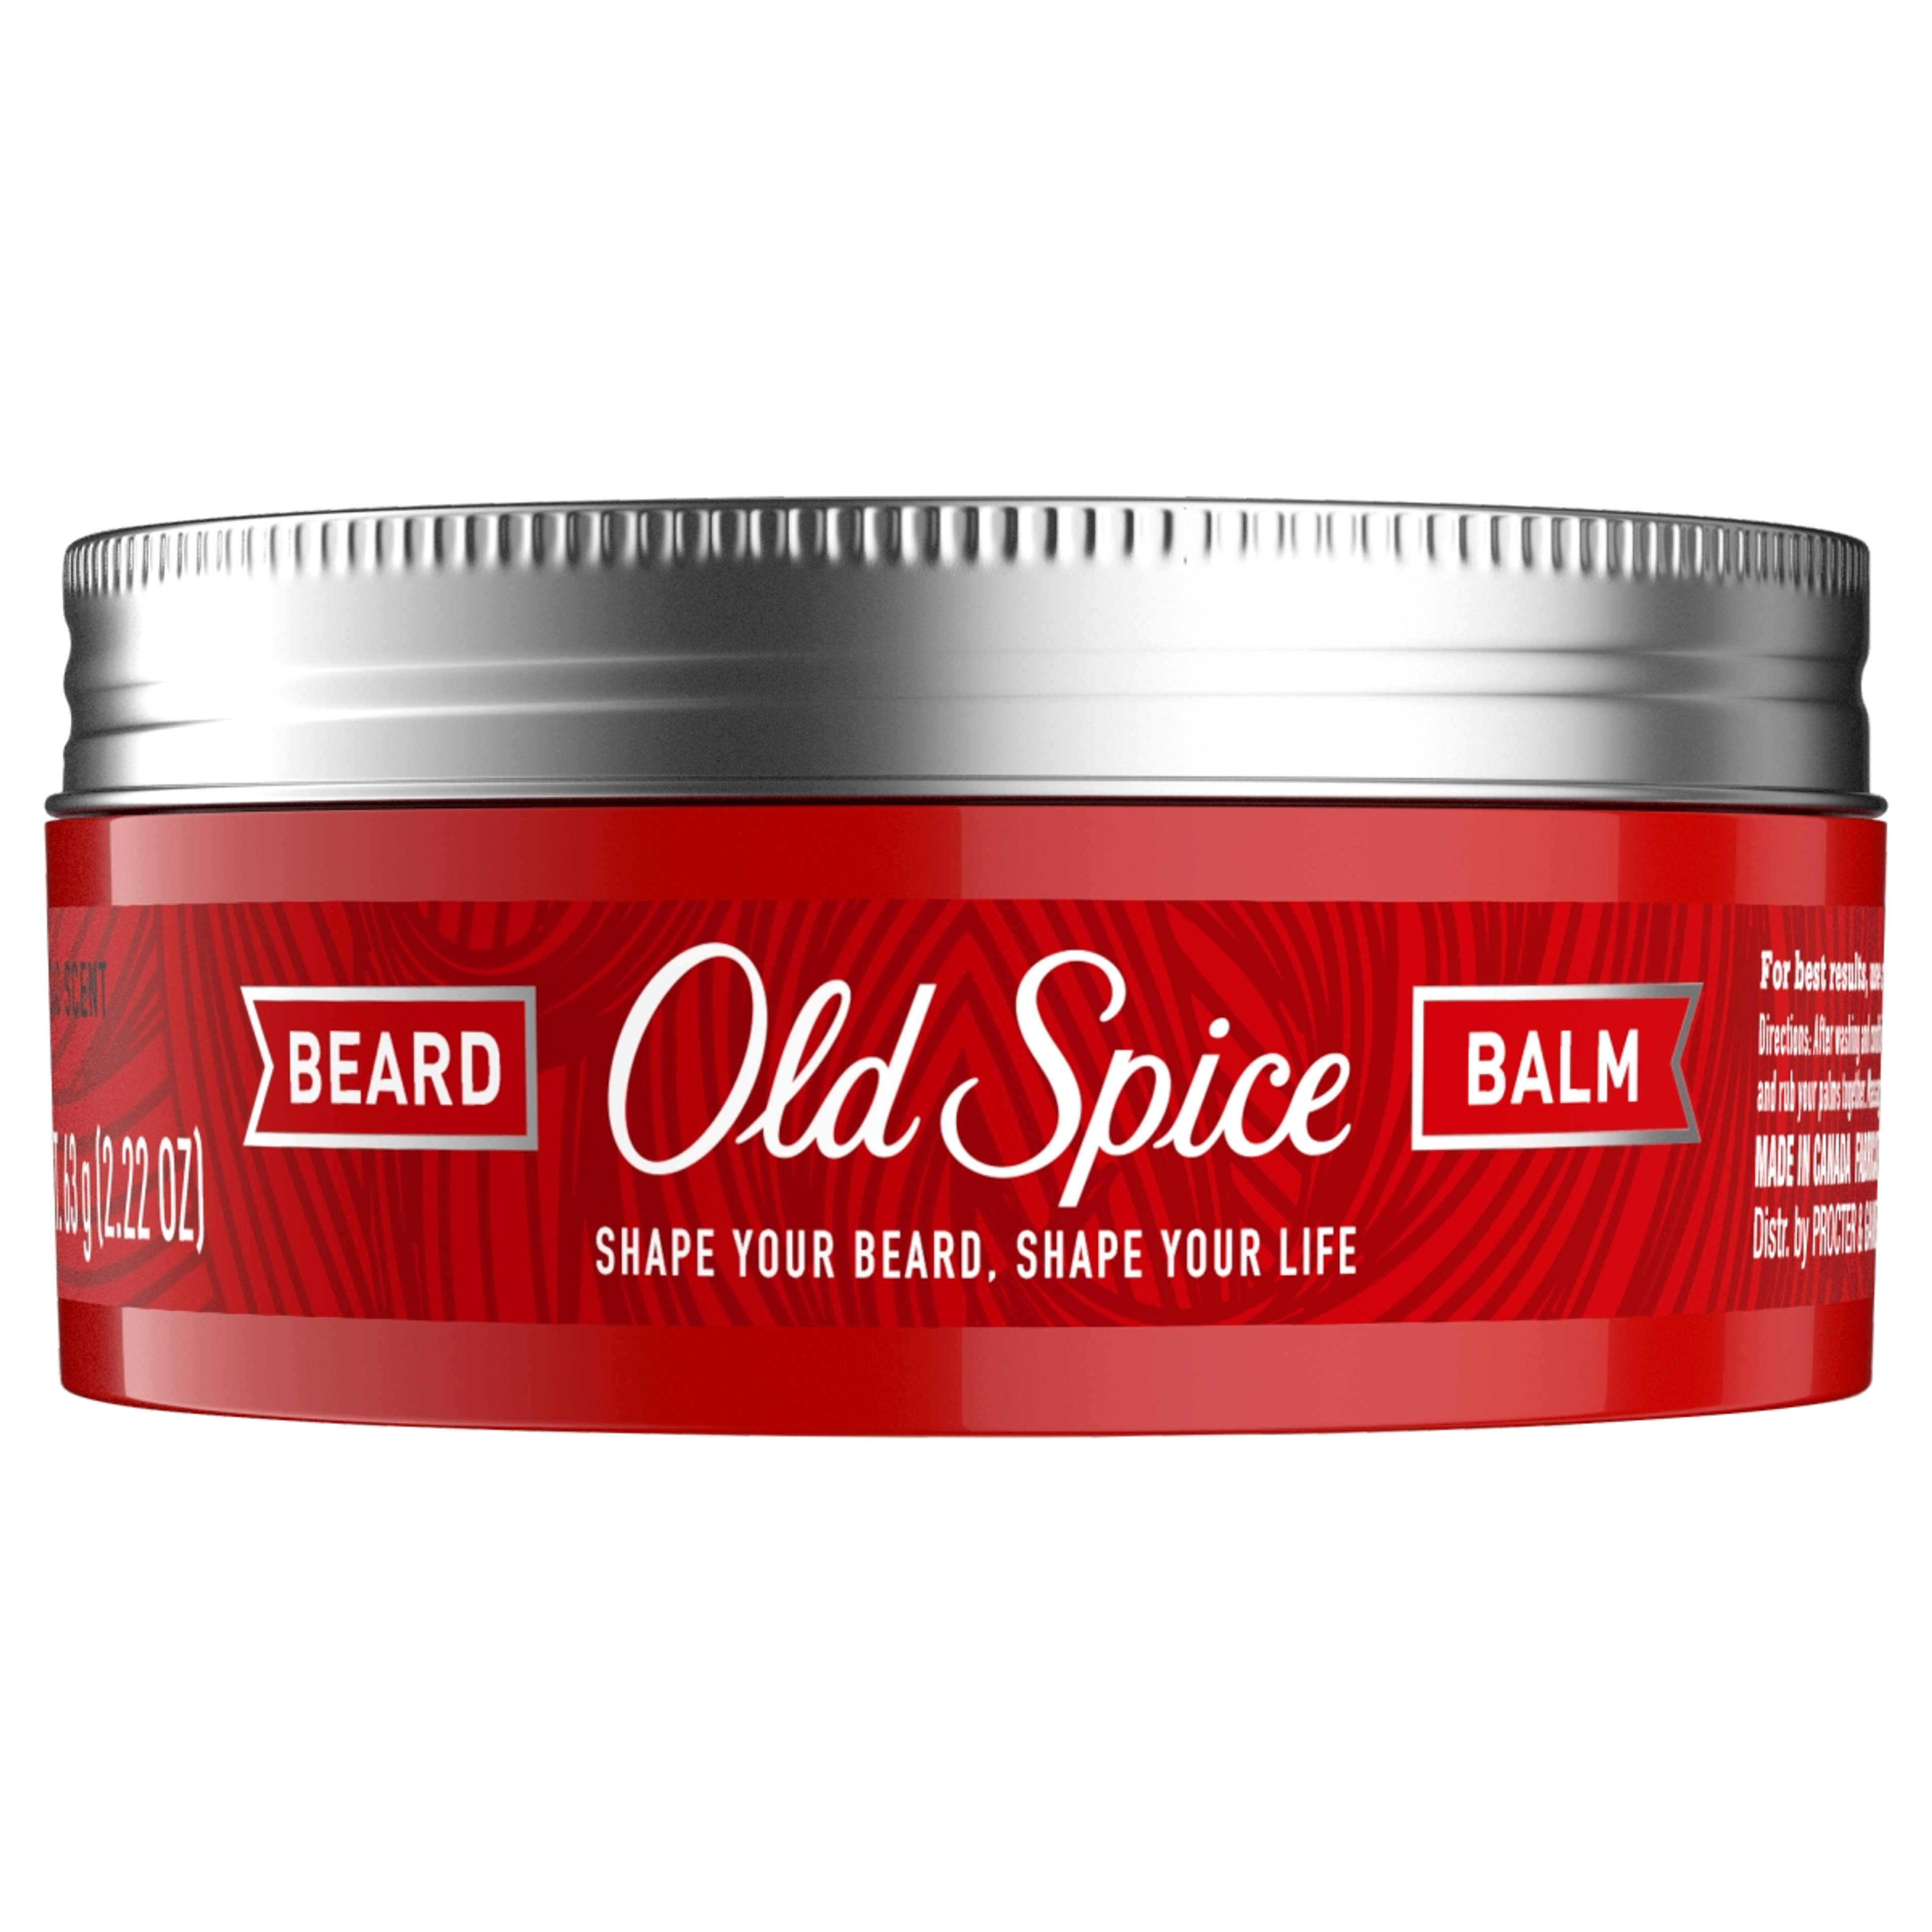 Old spice szakáll balzsam - 63 g